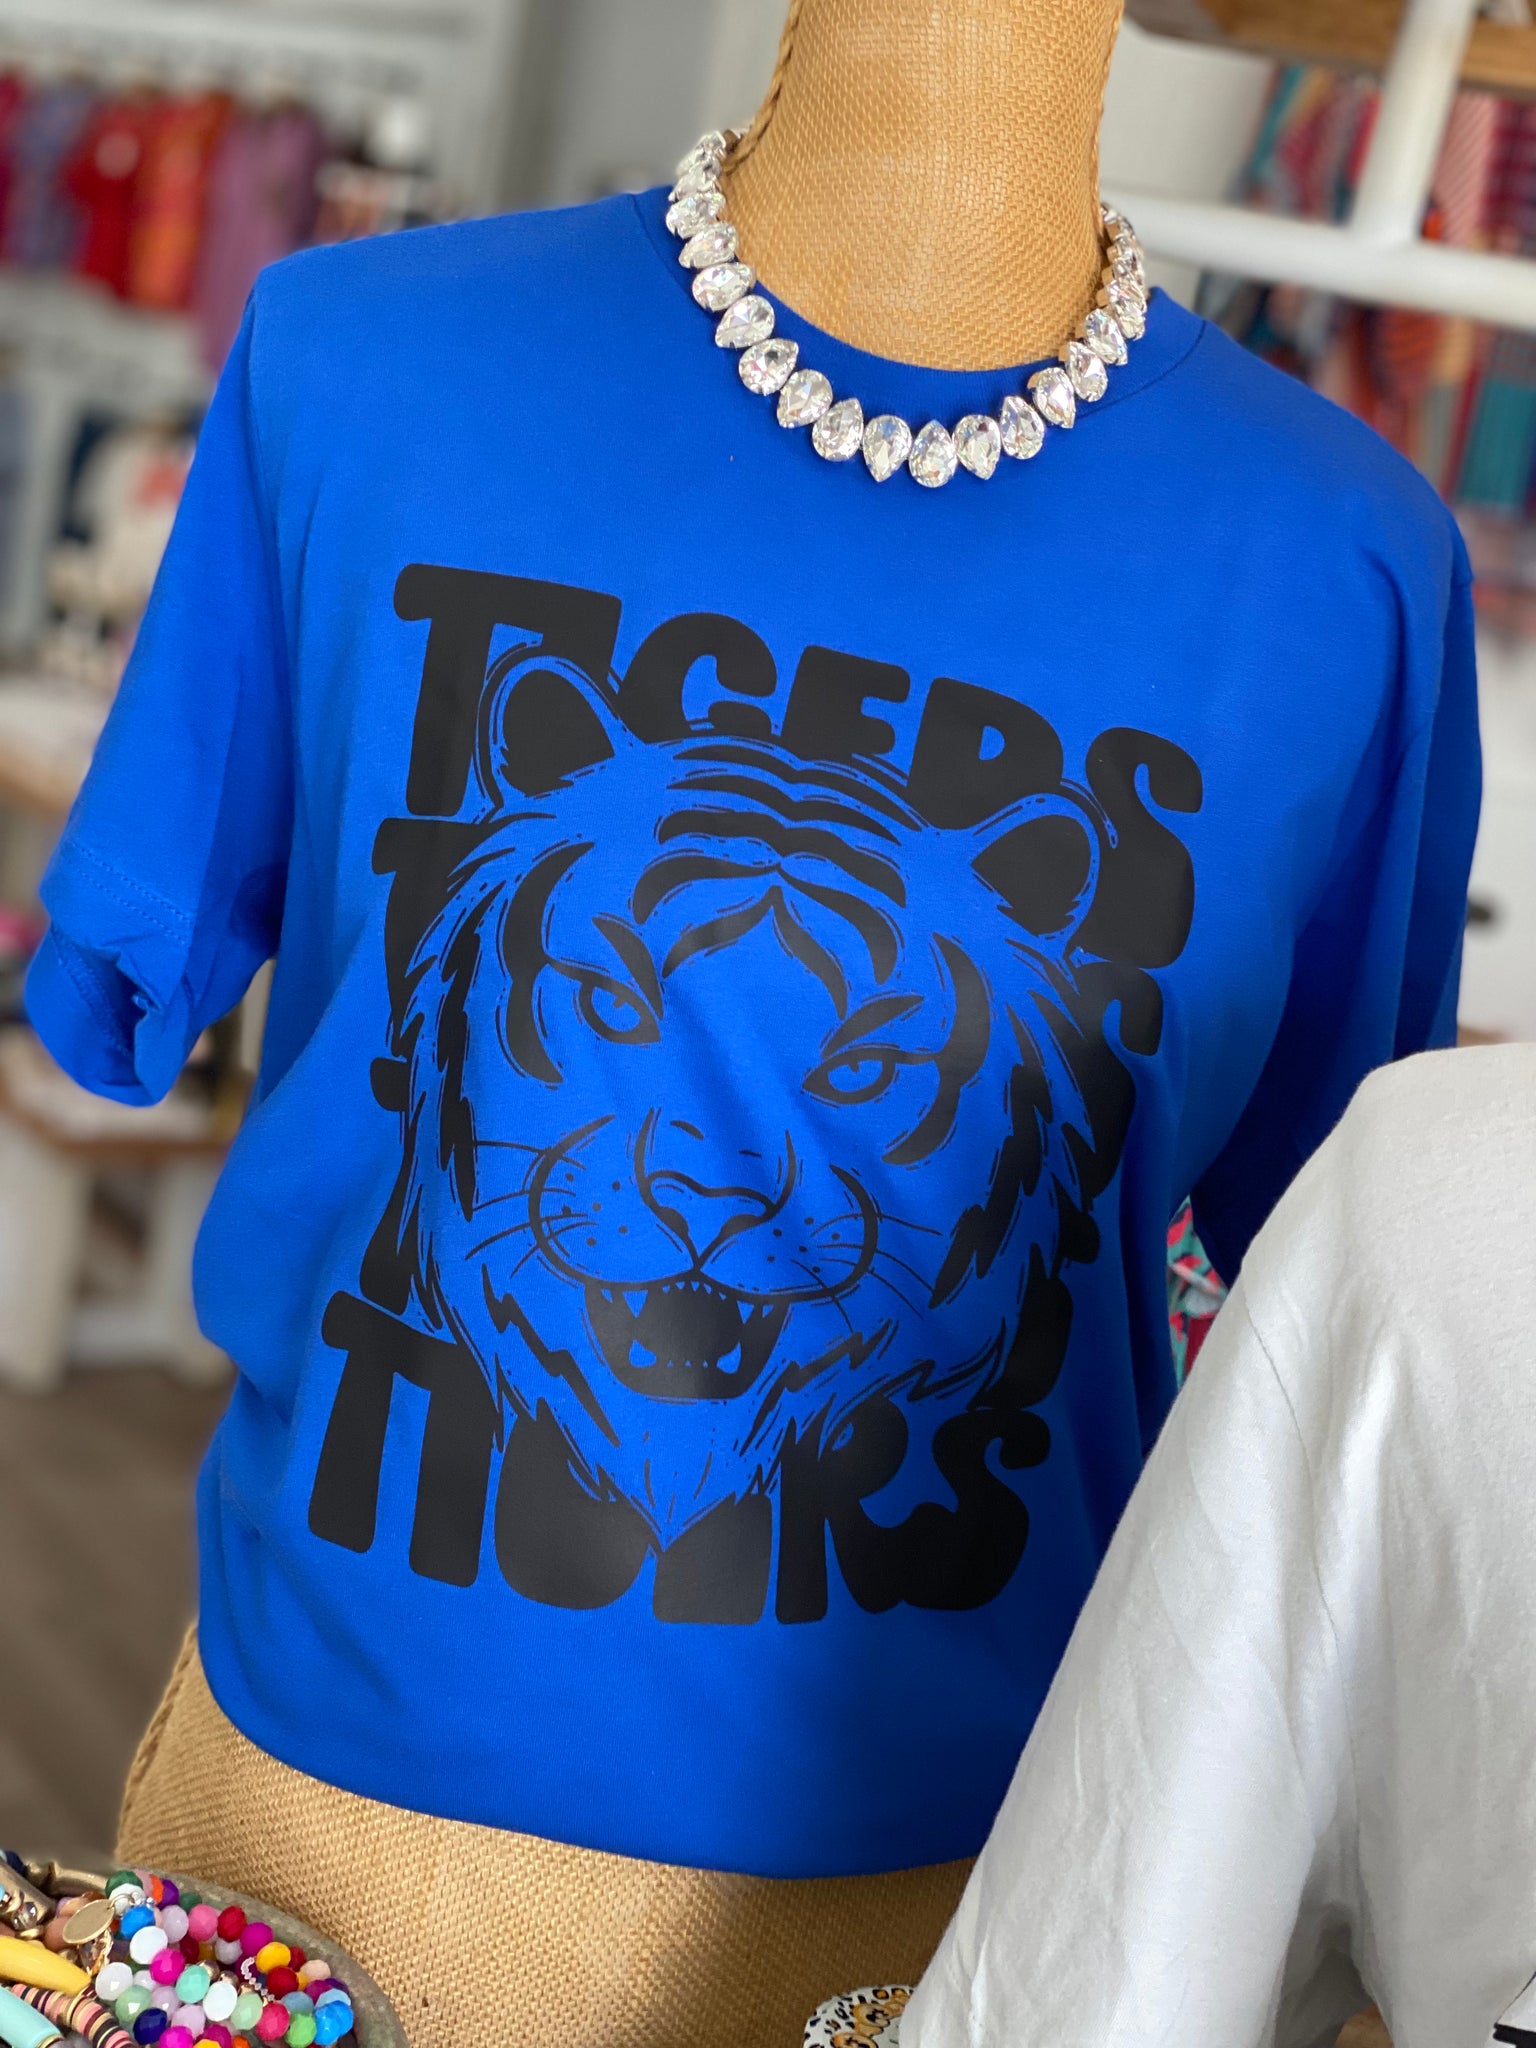 Tigers Tigers Tigers in Blue